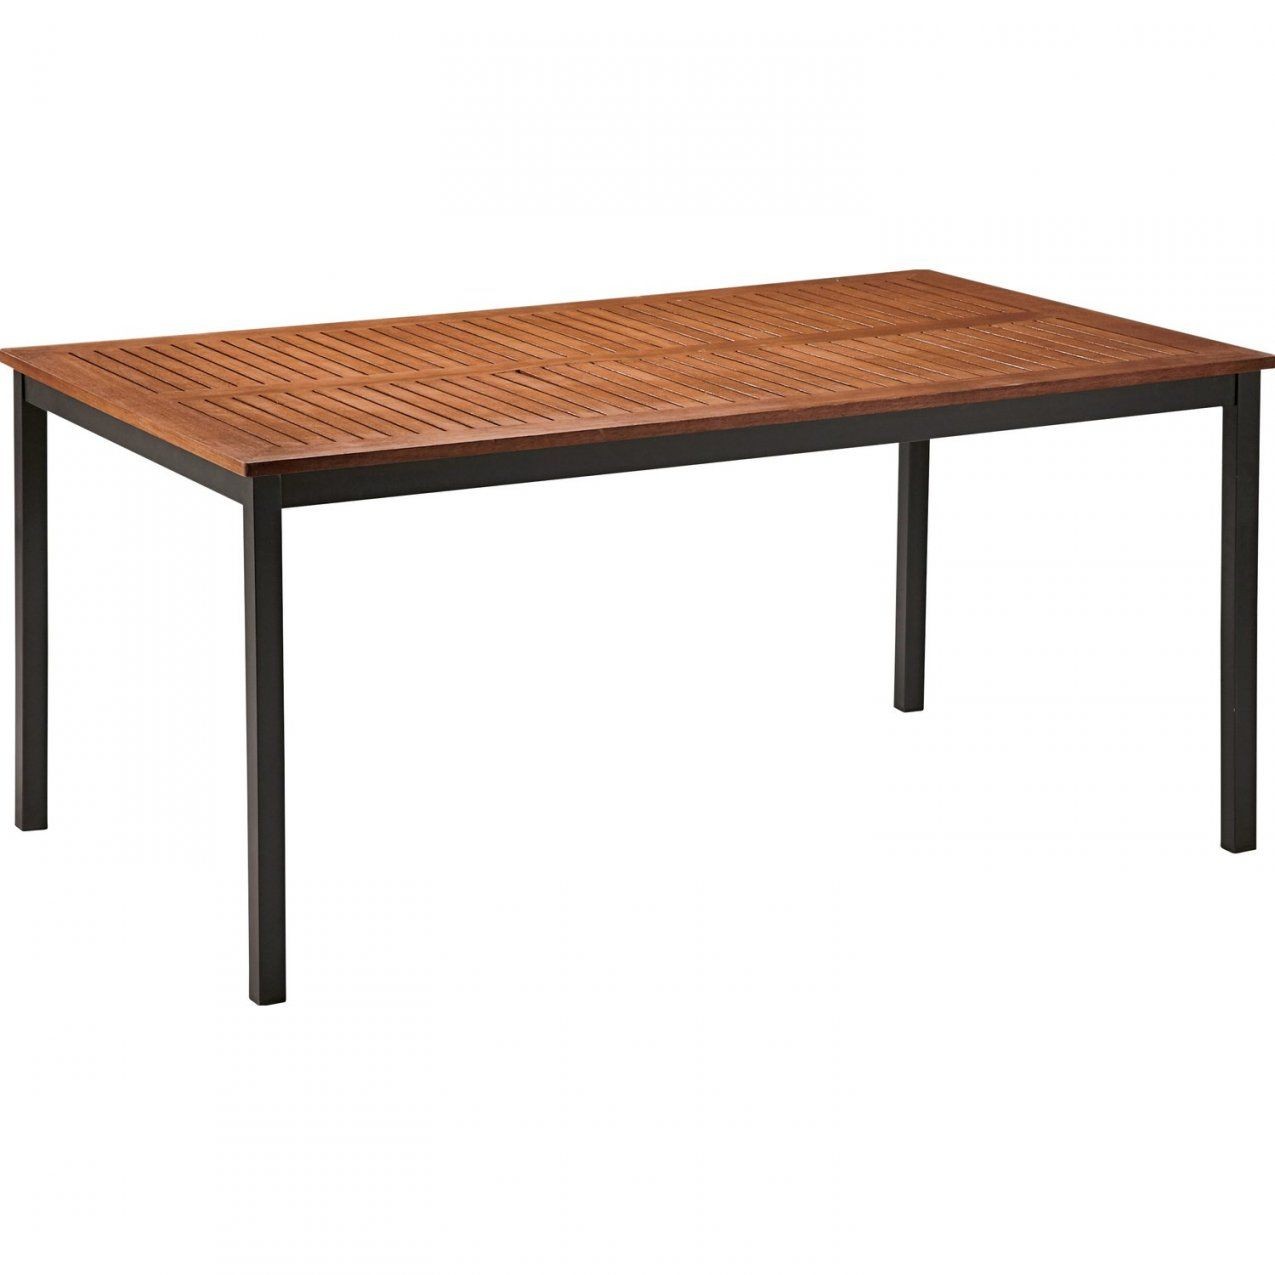 Obi Tisch Davenport 160 X 100 Cm Kaufen Bei Obi von Tisch Selber Bauen Obi Photo